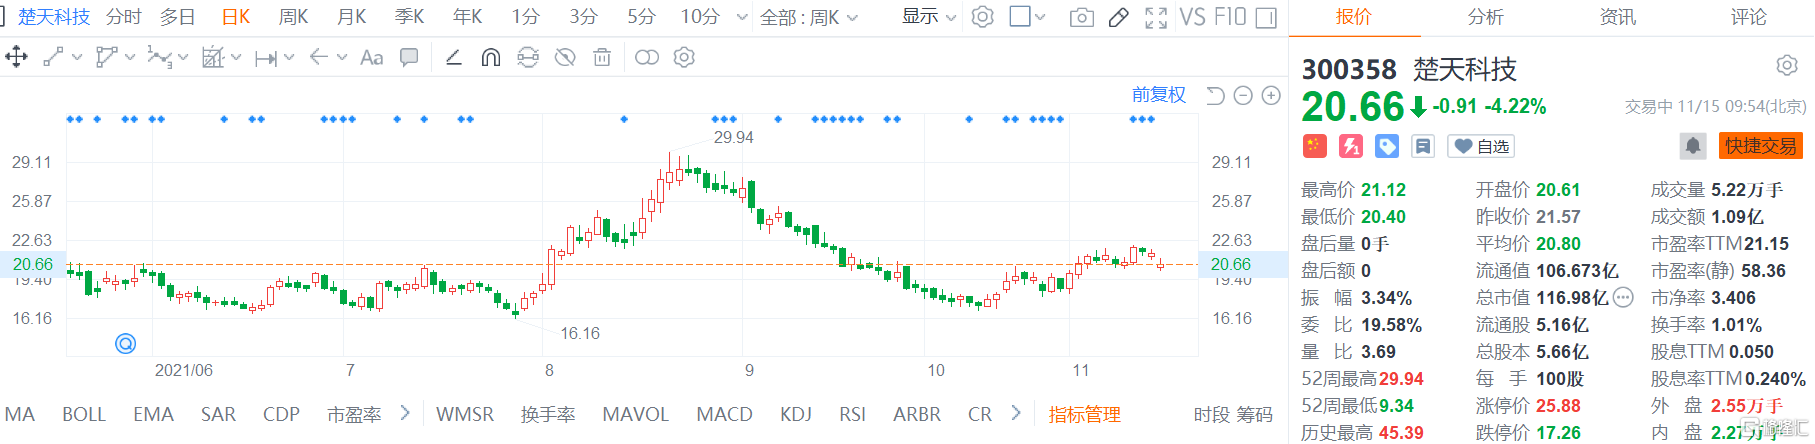 楚天科技(300358.SZ)股价弱势震荡，现报20.66元跌幅4.2%